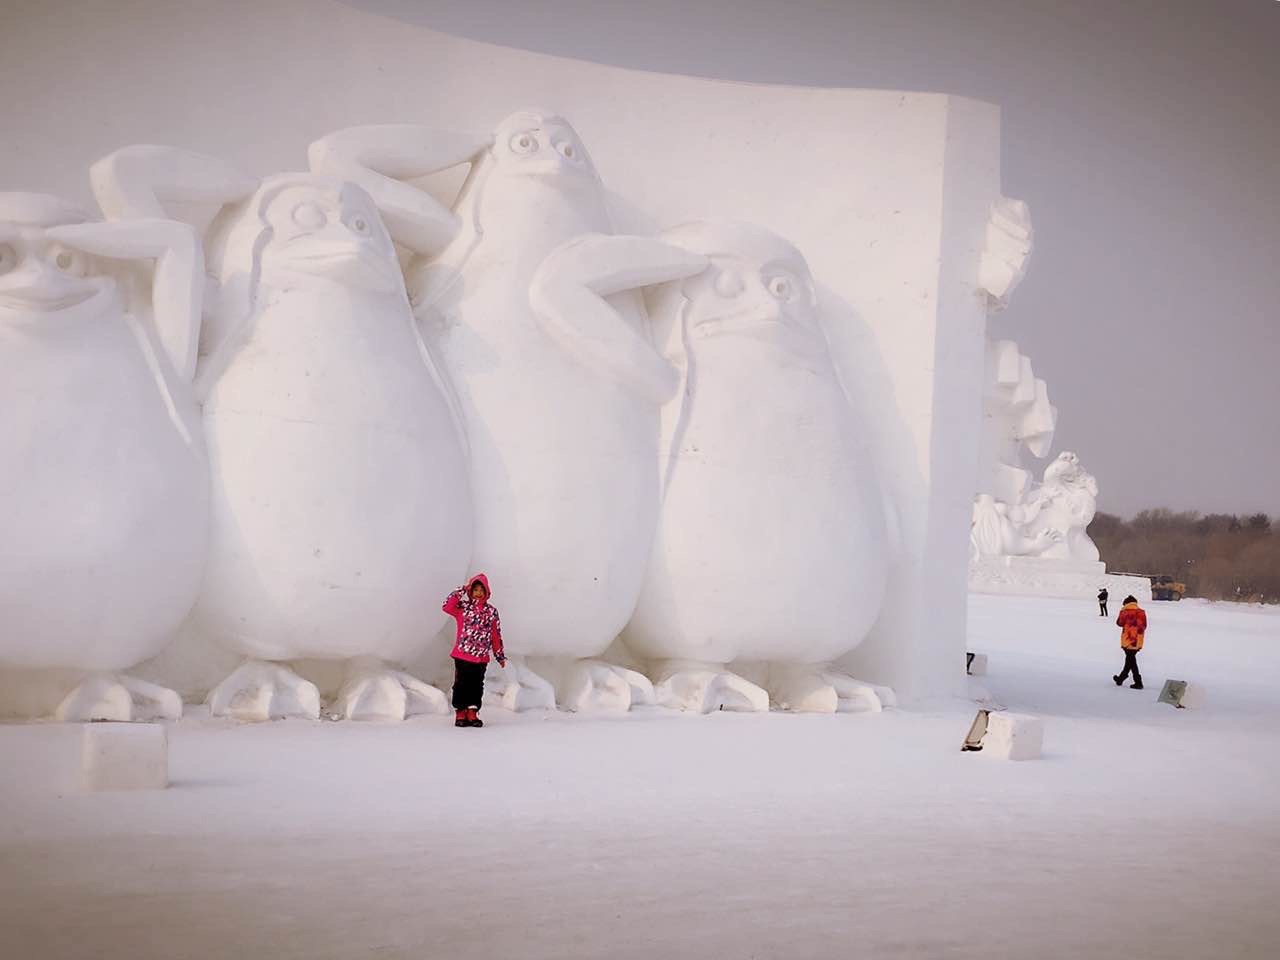 太阳岛雪博会位于太阳岛风景区内，与冰雪大世界的冰雕作品不同，雪博会展示